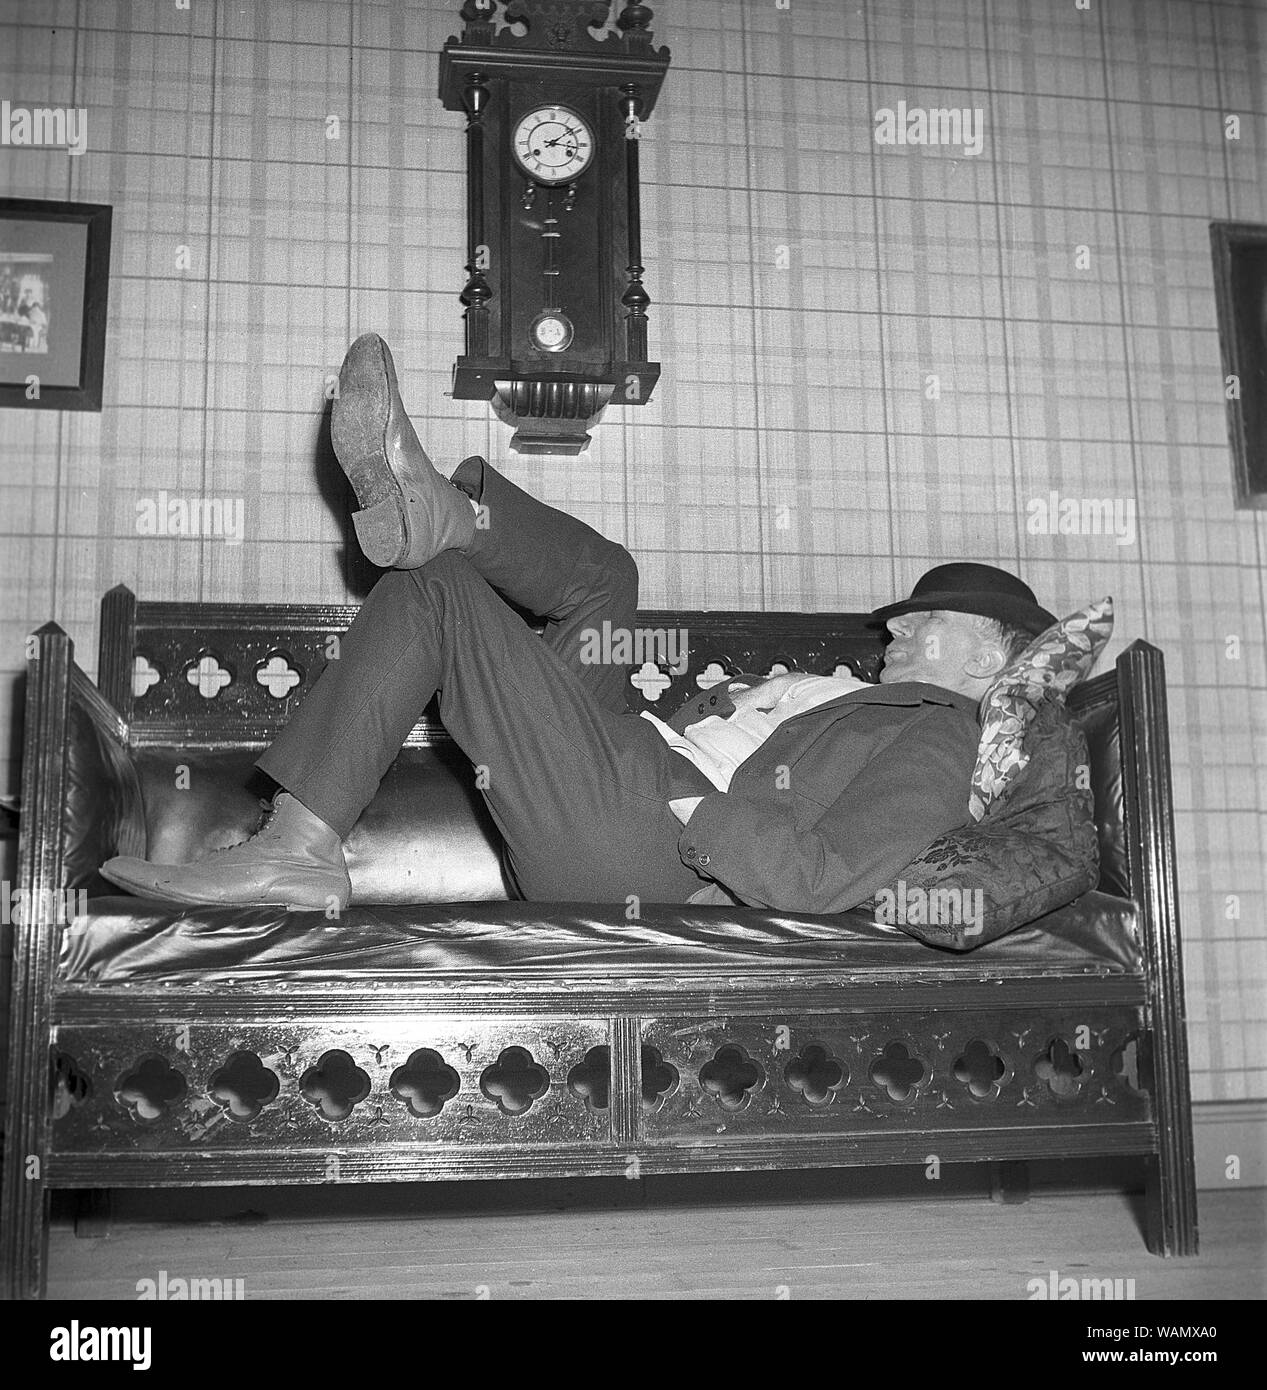 Avoir un petit somme dans les années 40. Un homme fatigué est allongé sur le canapé ayant une sieste. Il est acteur Ludde Gentzel et dans le film Kronblom. Suède 1947. Kristoffersson Photo ref ref AC34-3 Banque D'Images